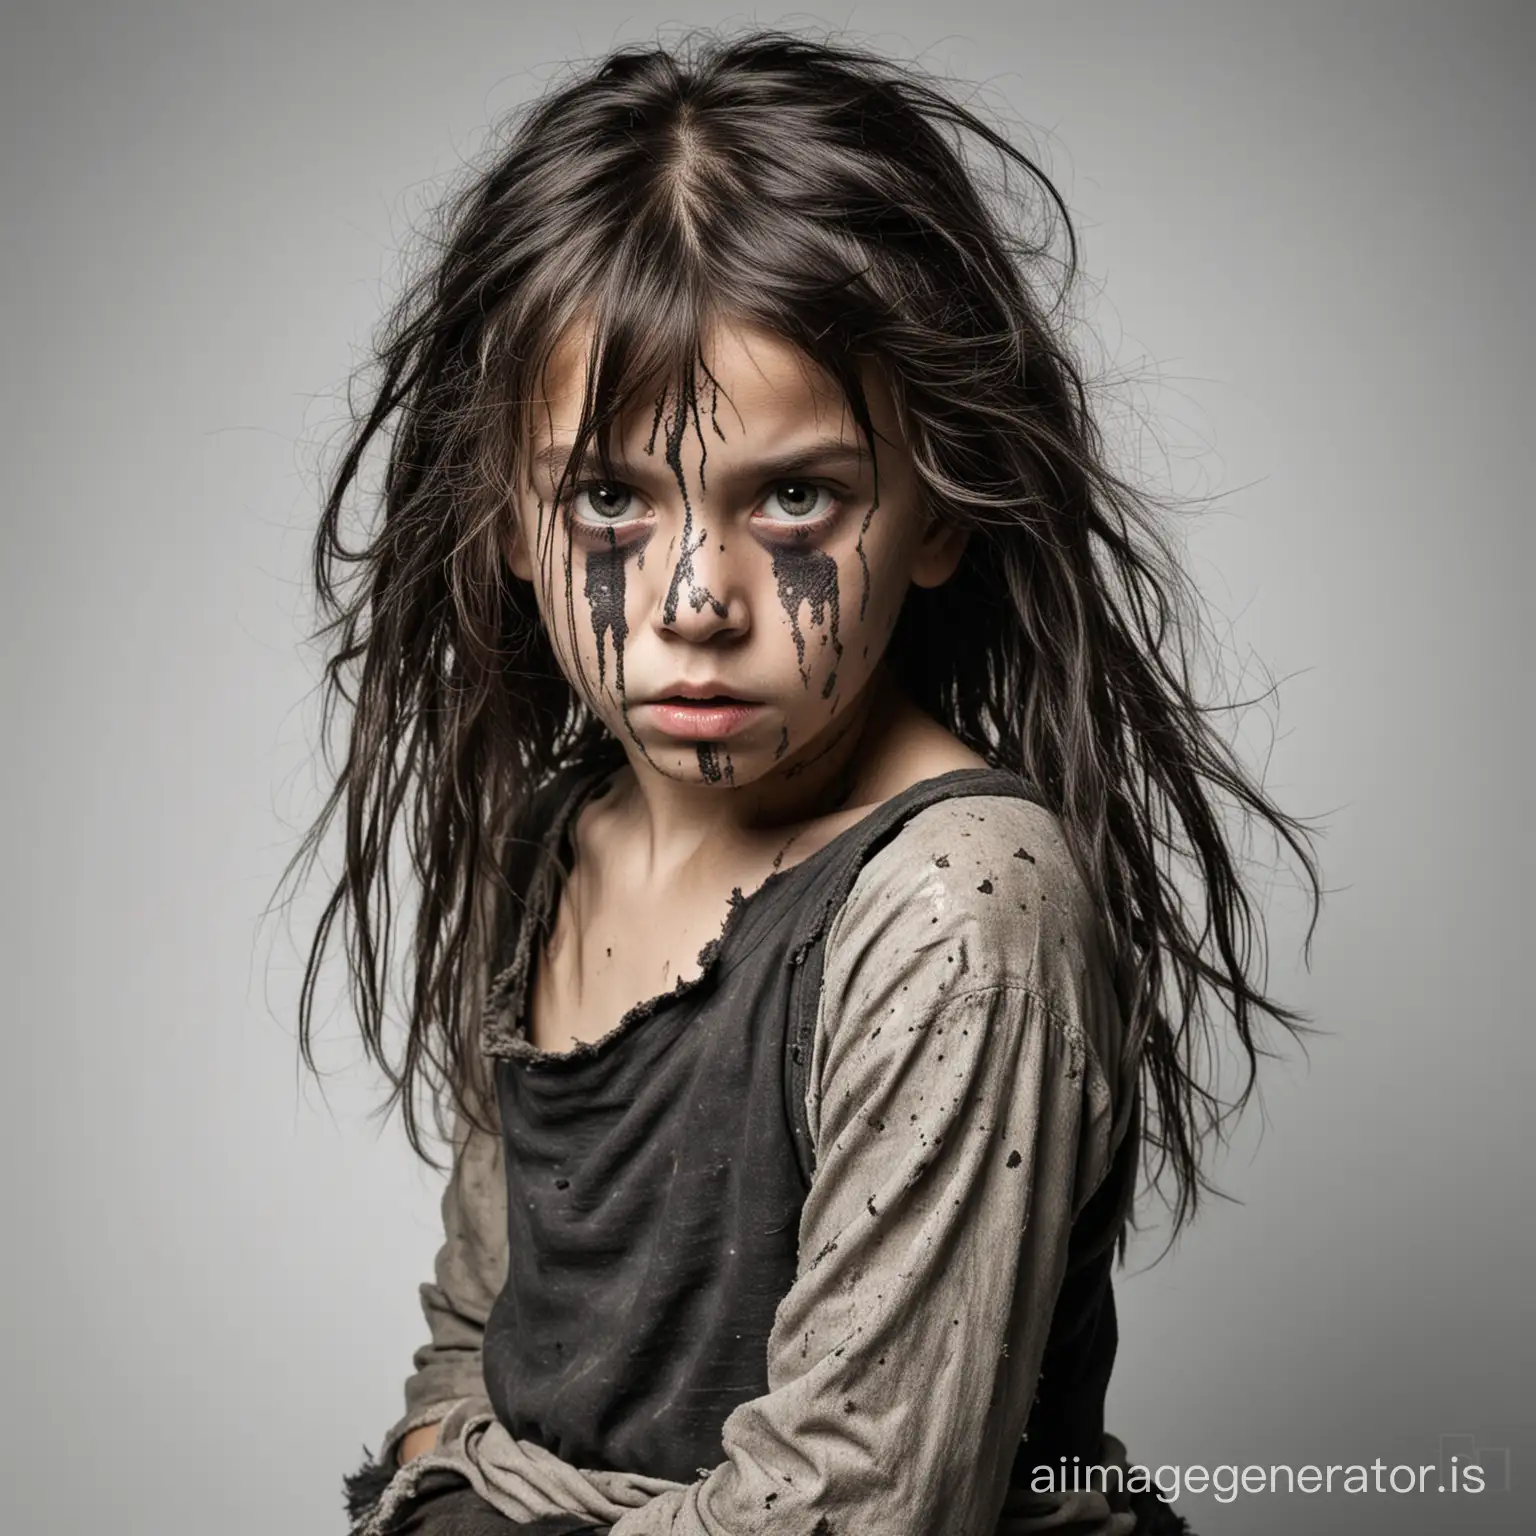 un enfant sauvage effrayant, très sale, habillé de v^etements troués et sales, les cheveux longs, noirs et sales, image sur fond blanc, période moyen âge